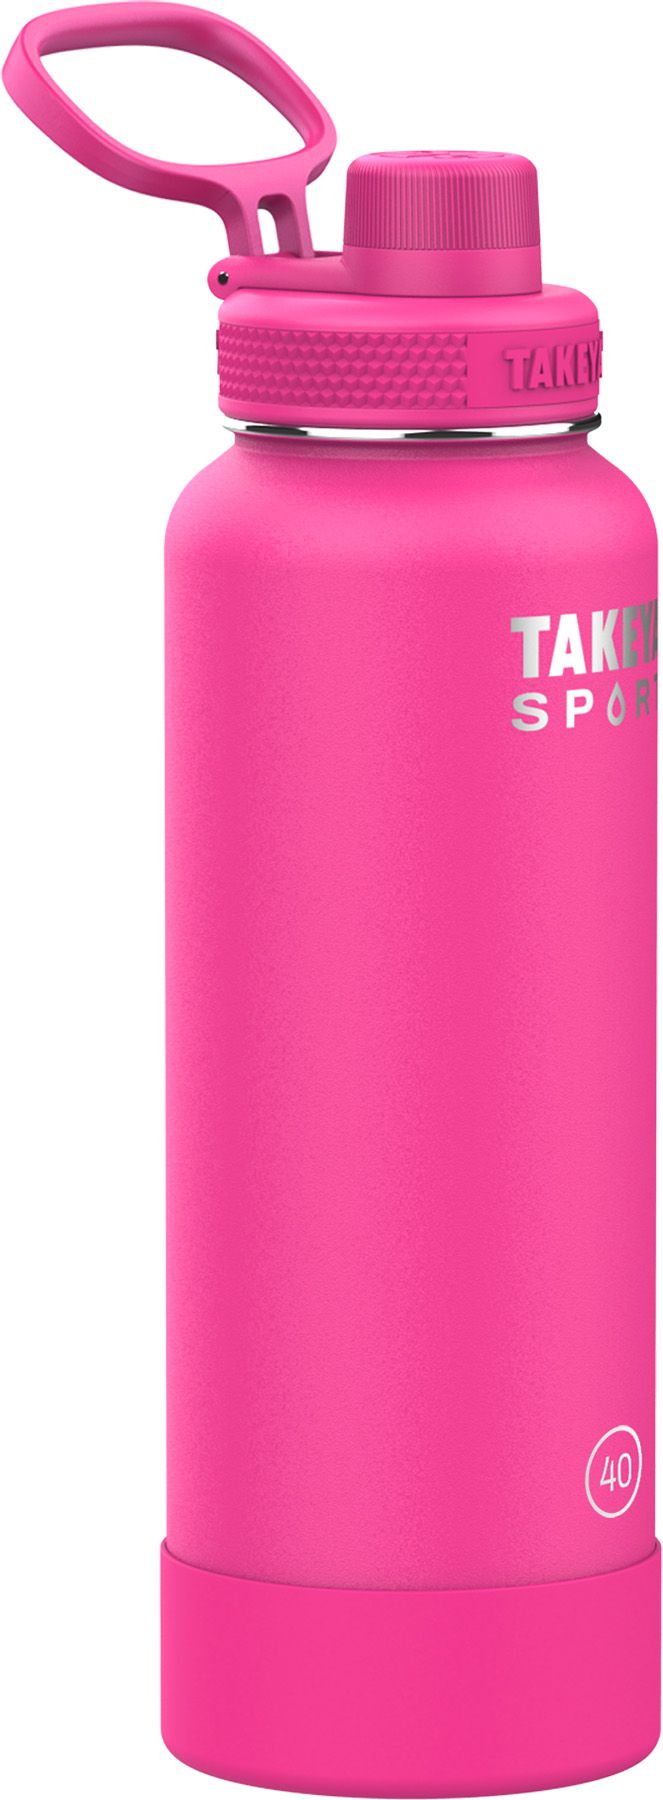 Takeya Sport 40 oz. Water Bottle with Spout Lid